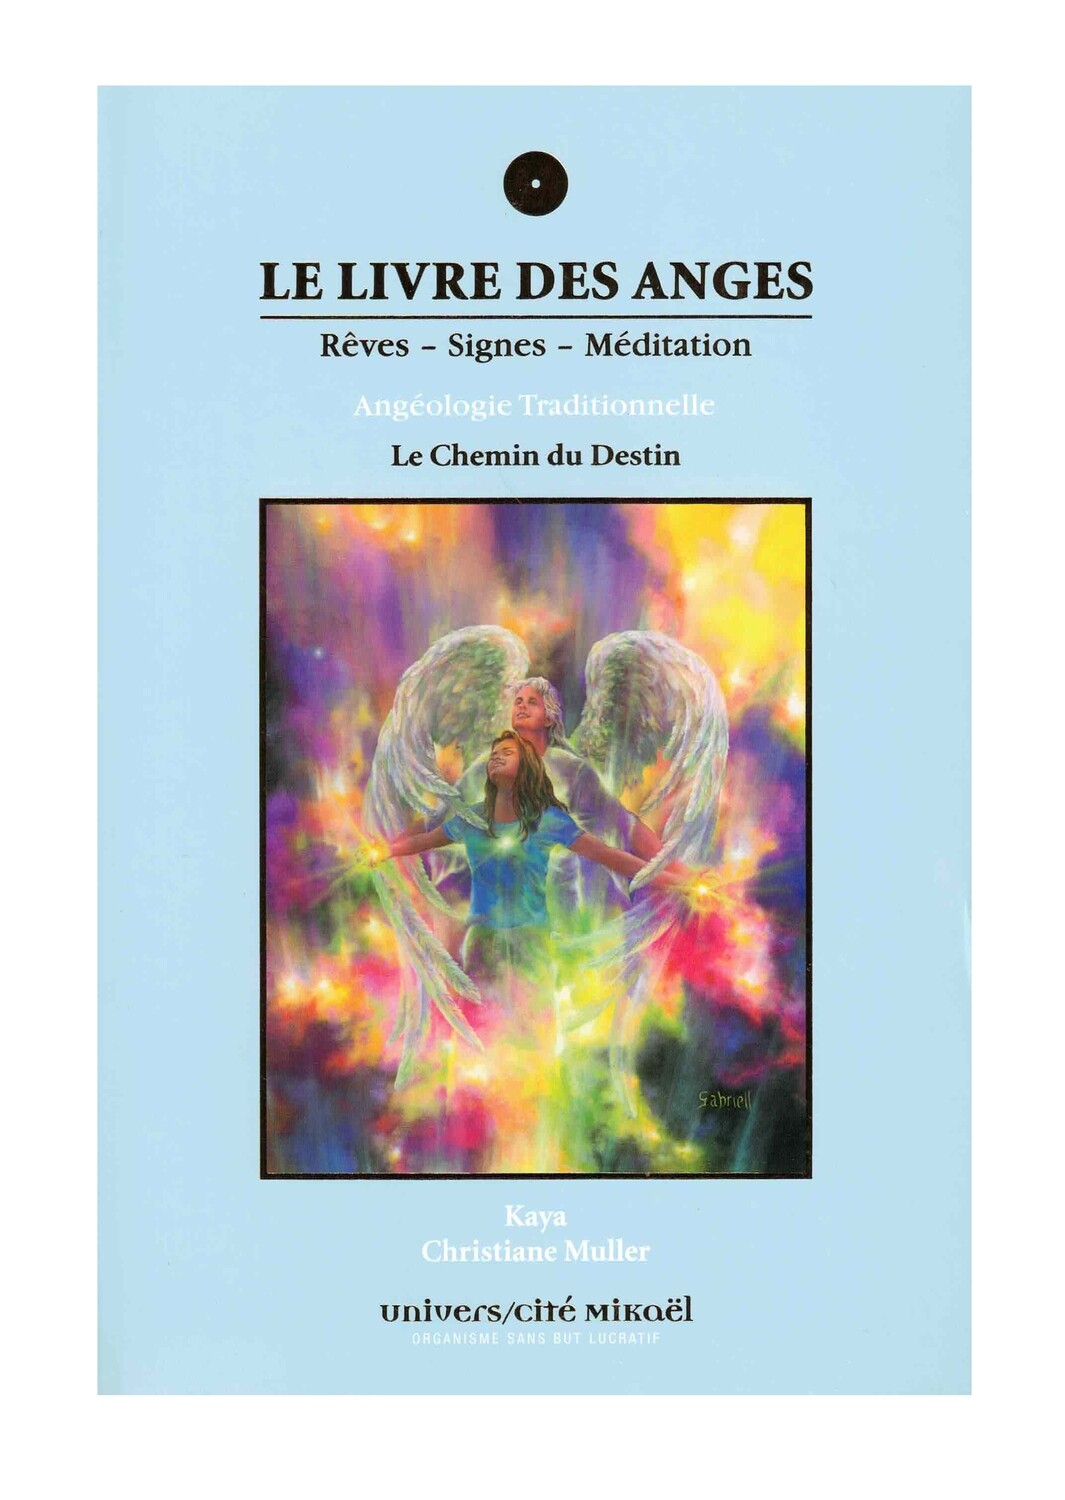 Le livre des Anges rêves, signes et méditation - Le chemin du destin